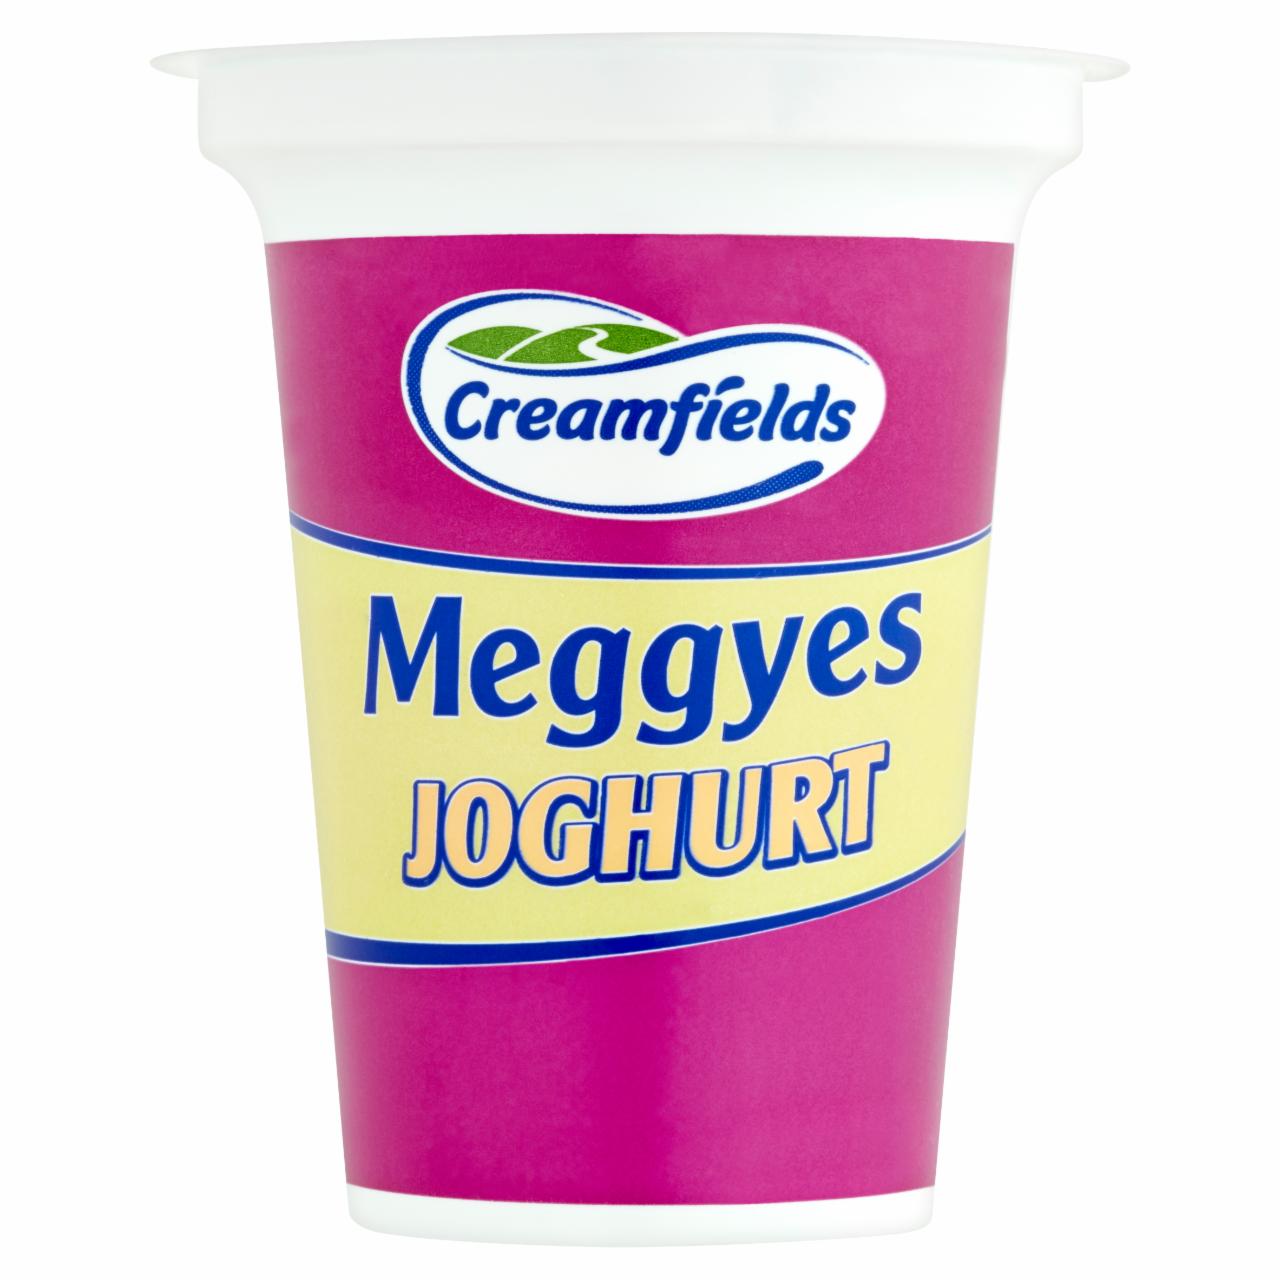 Képek - Creamfields meggyes joghurt 140 g